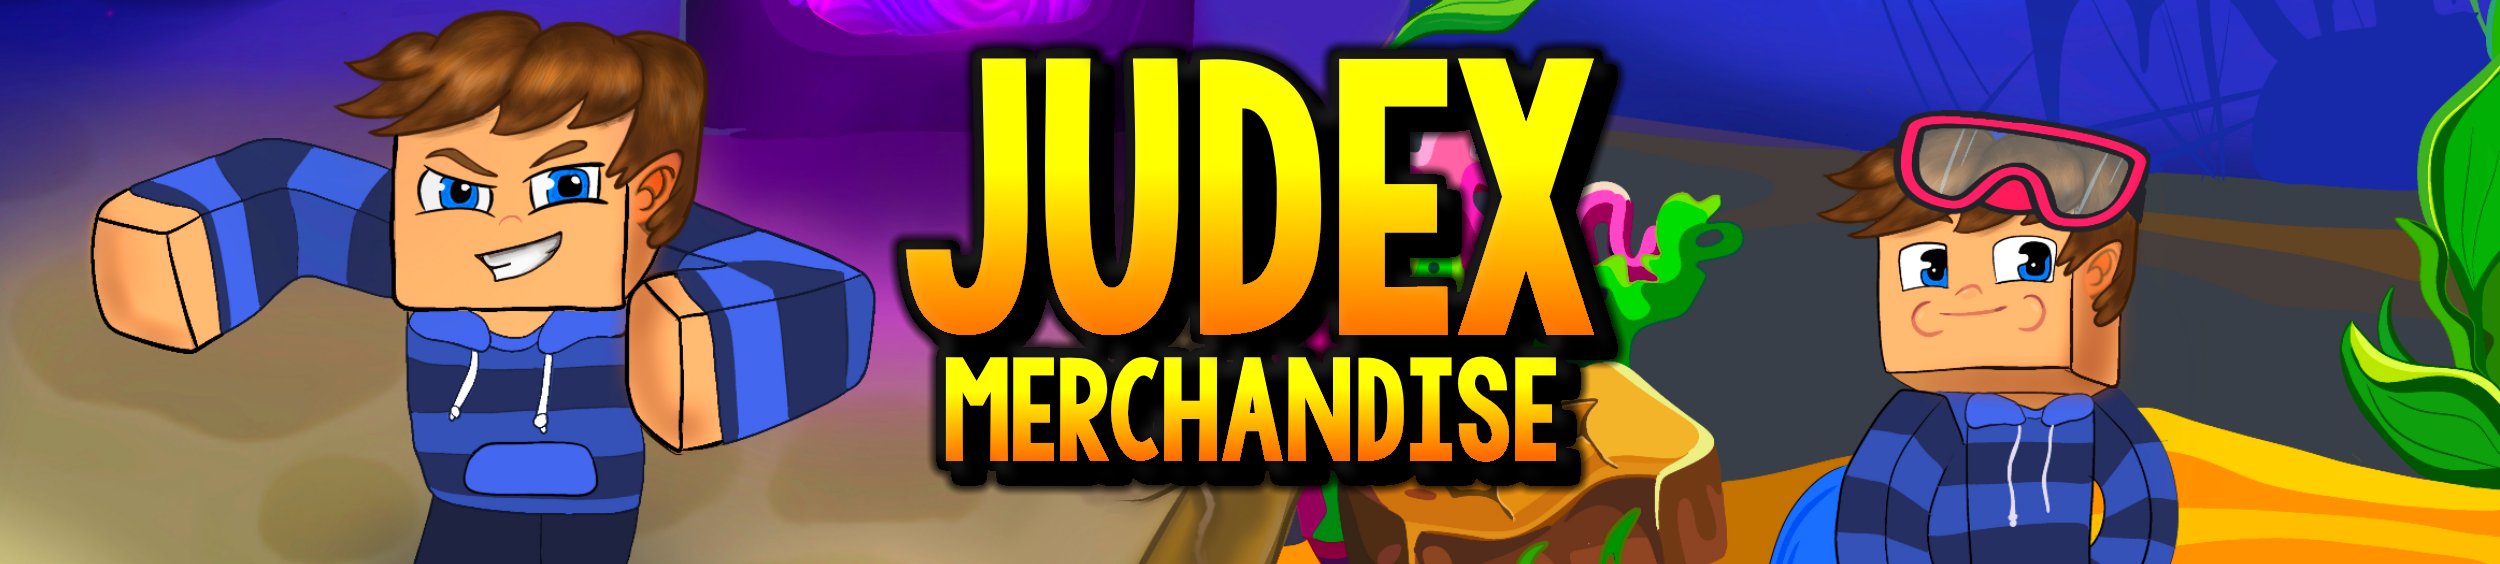 judex merchandise hos geekd